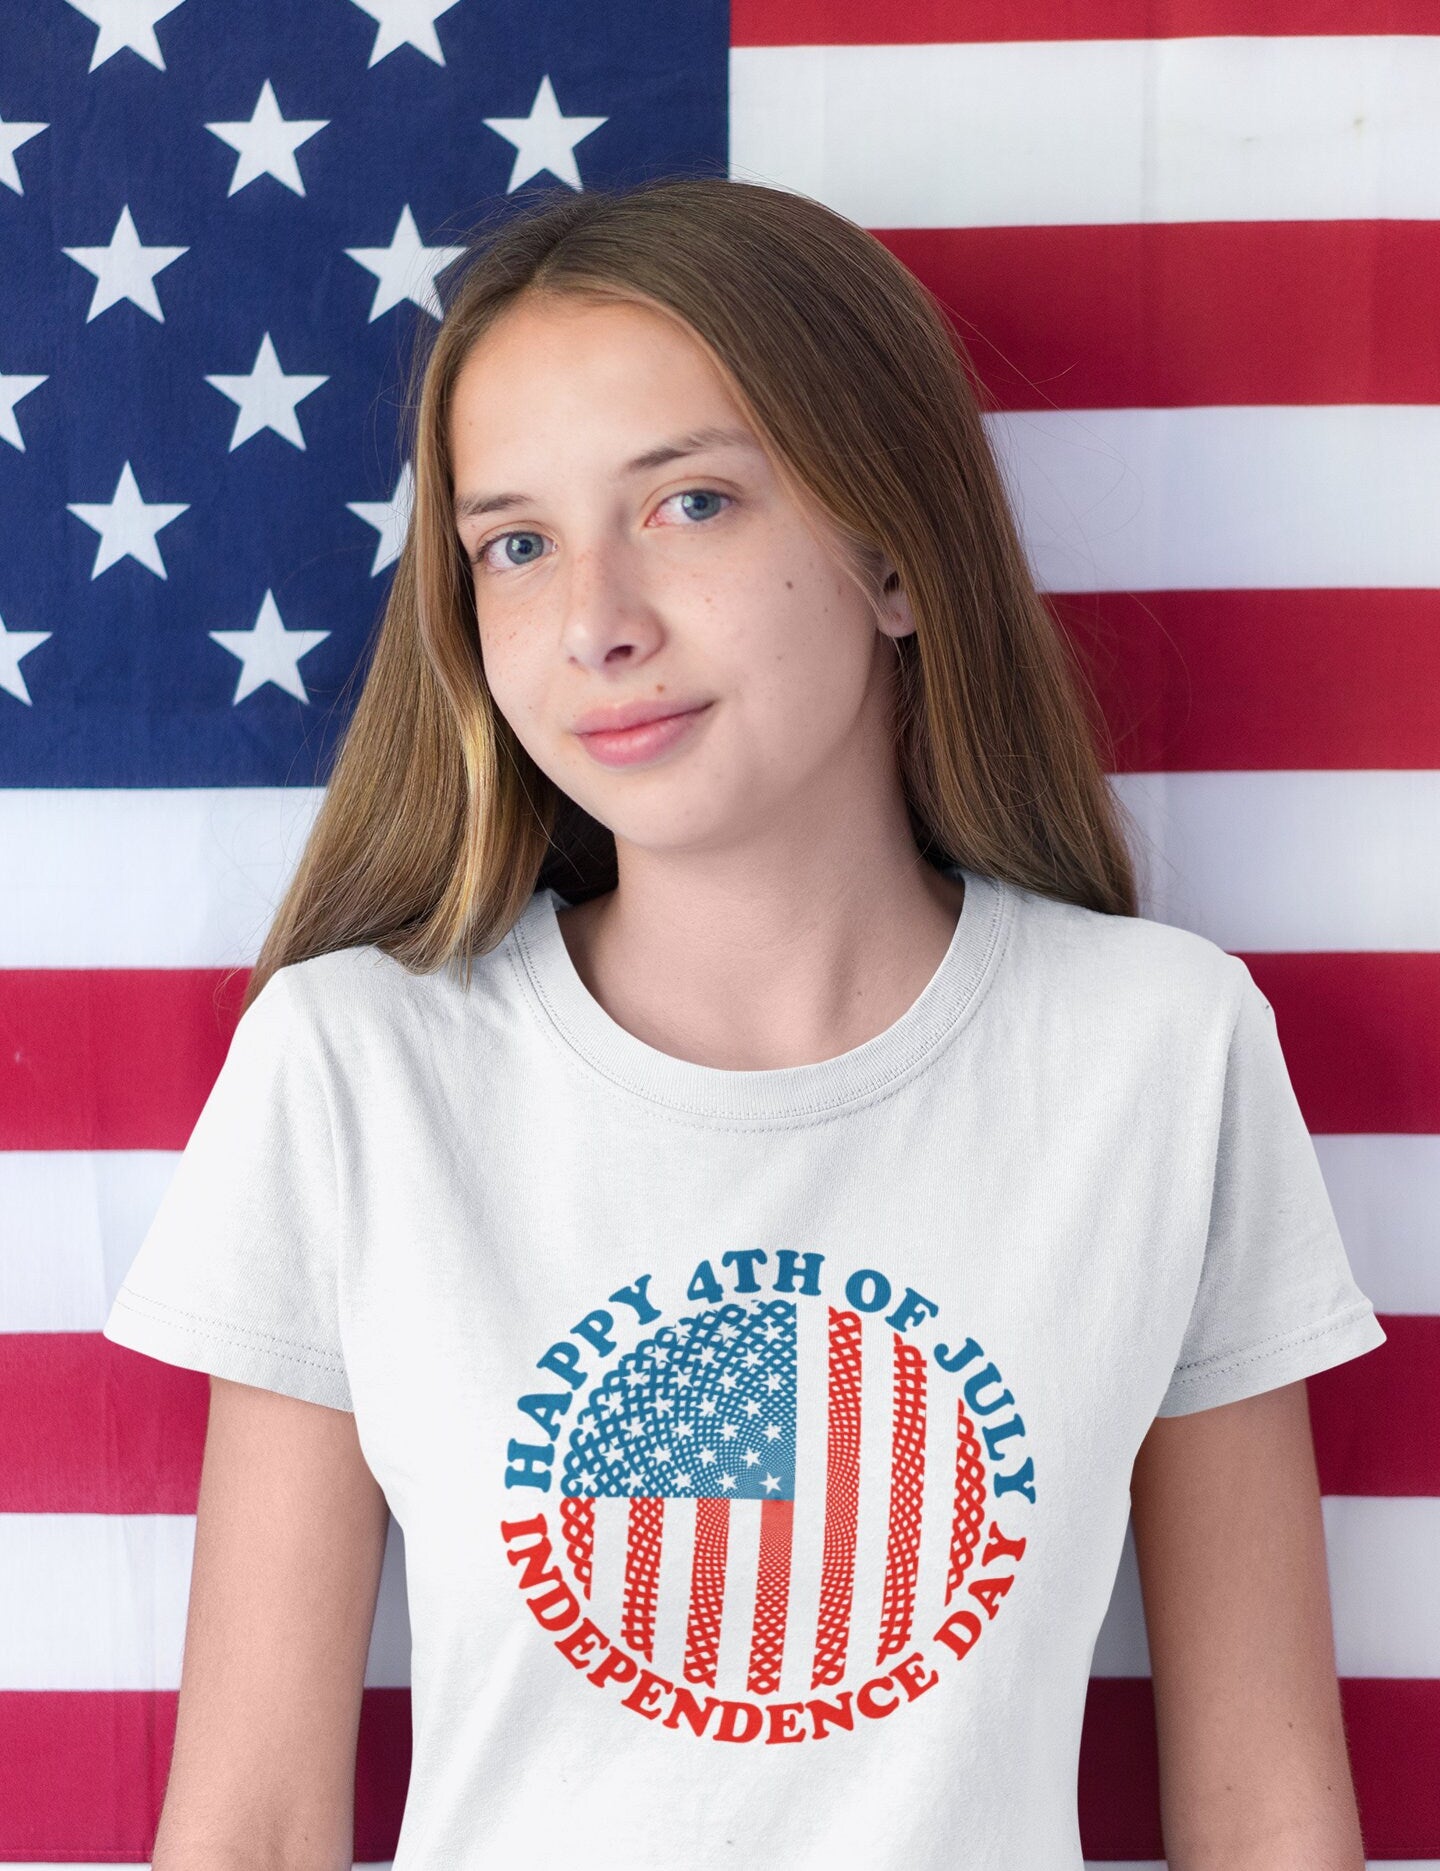 З 4 липня | День Незалежності | Круг американського прапора, сорочка четвертого липня, патріотична сорочка, сорочки до Дня незалежності, патріотична родина - plusminusco.com